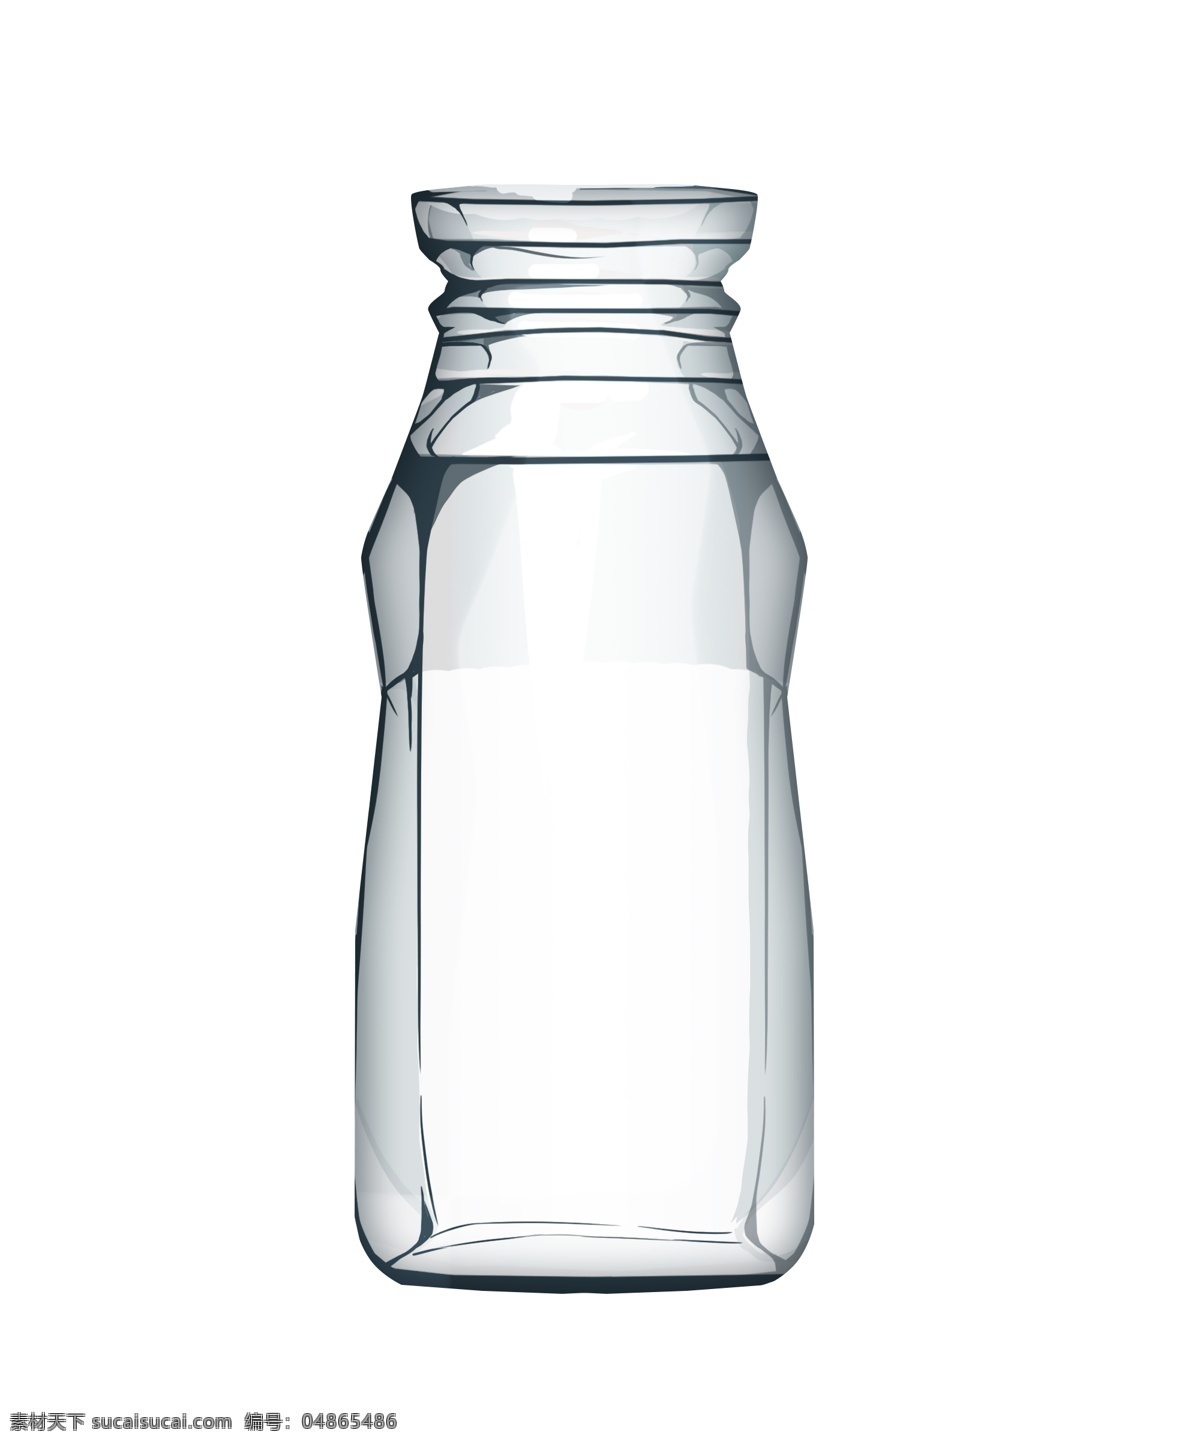 白色 瓶子 玻璃 插图 透明玻璃器 便于携带 卡通瓶子 喝水瓶子 旅行瓶子 日用气血 一体水杯 日常用品